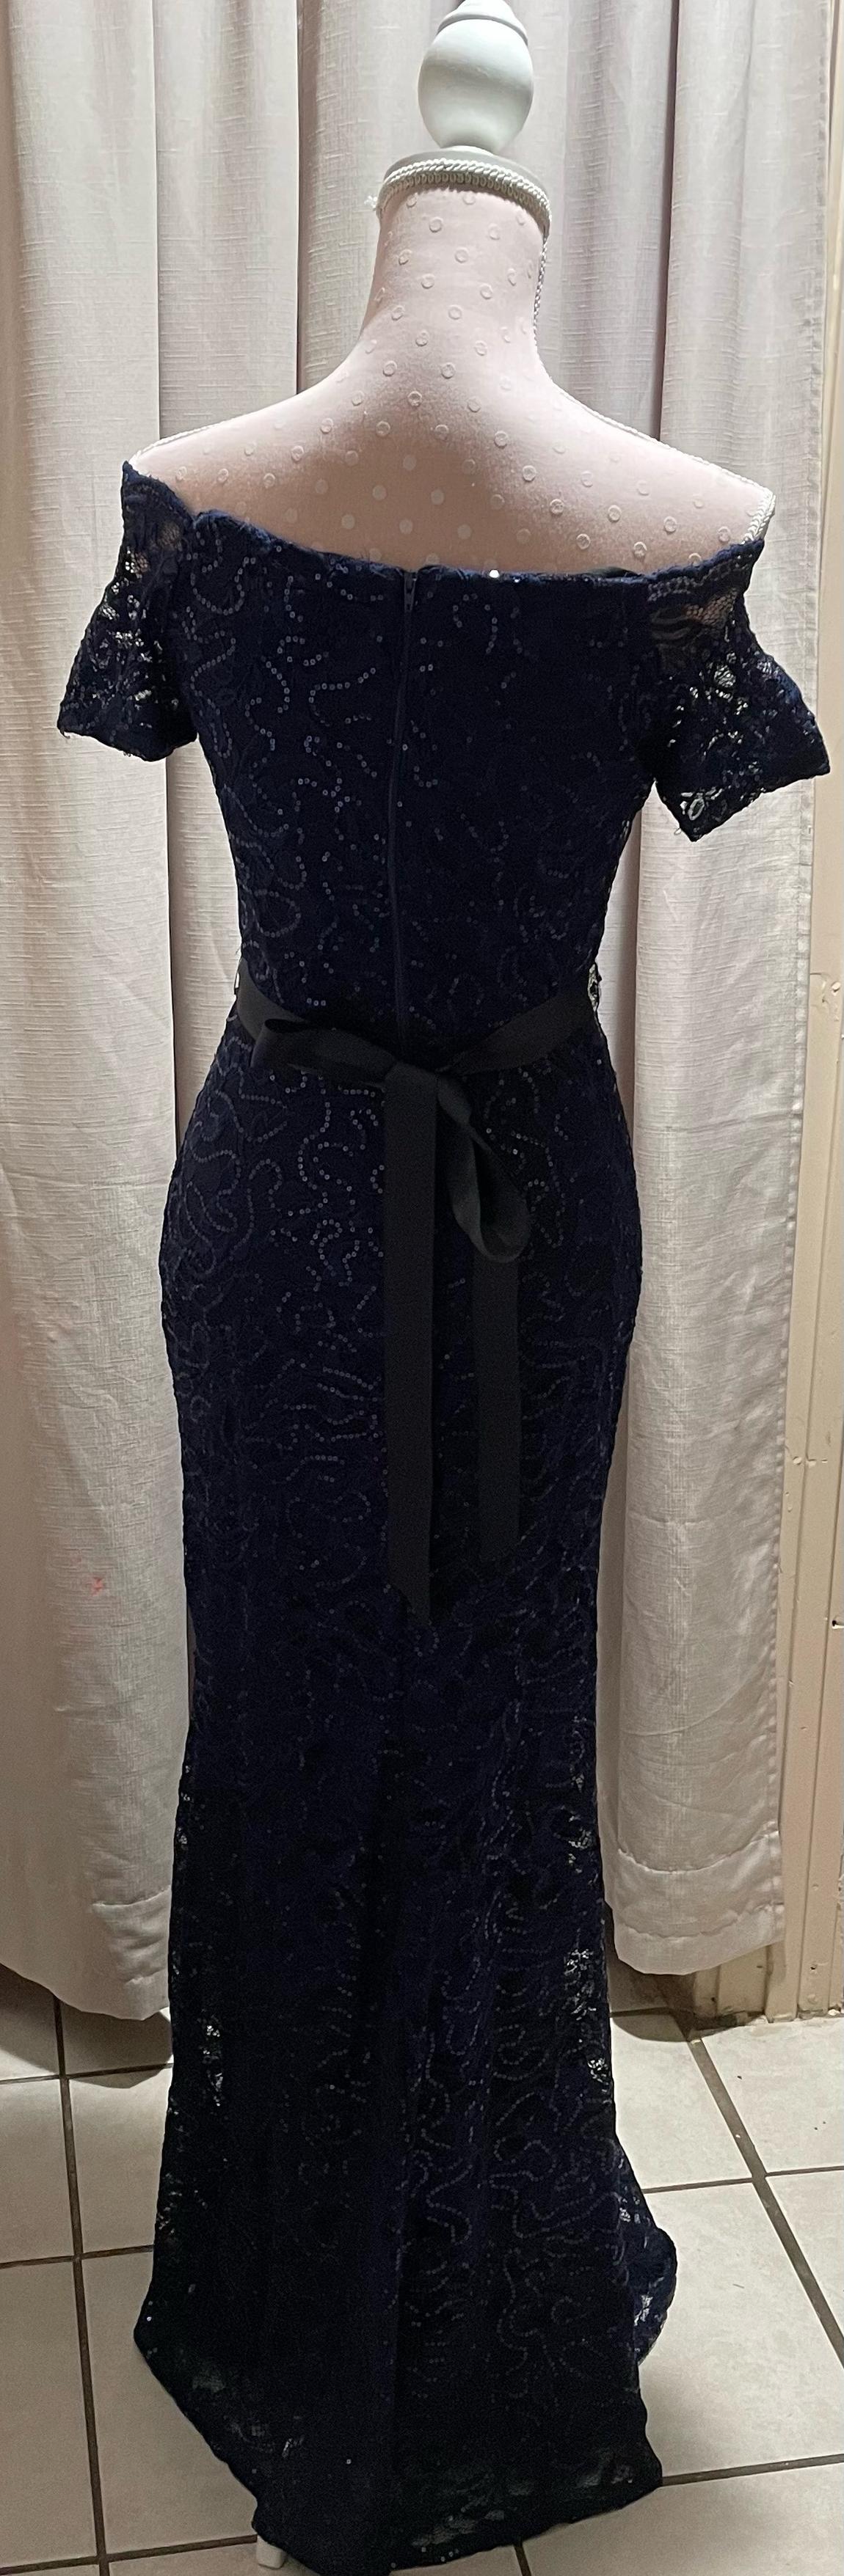 Size 10 Off The Shoulder Navy Blue Side Slit Dress on Queenly